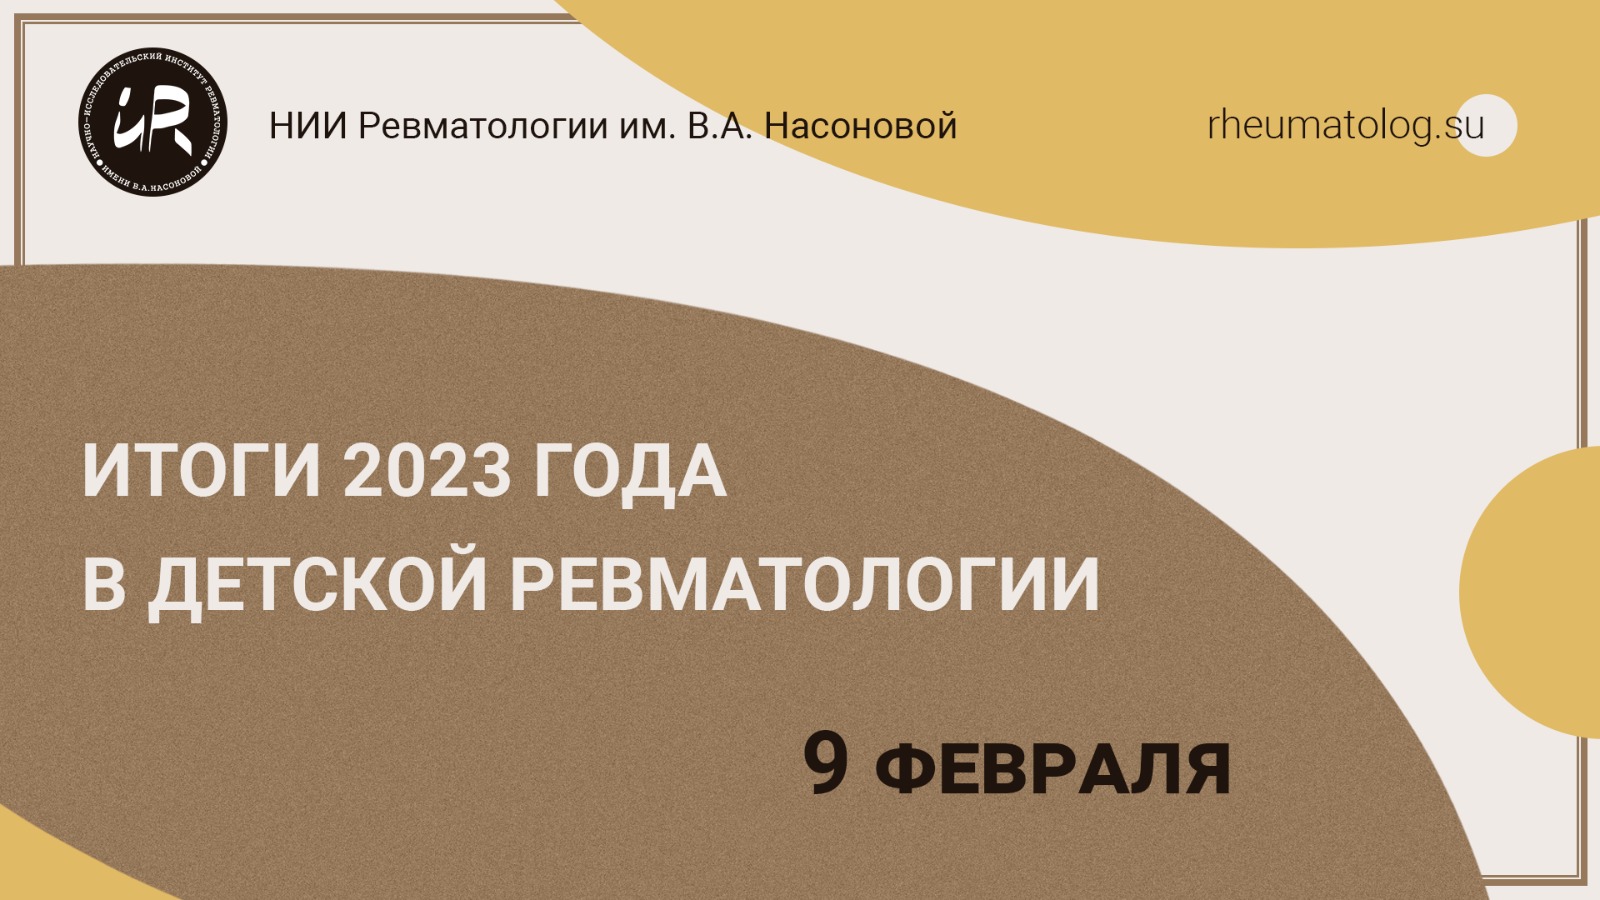 Научно-образовательный семинар "Итоги 2023 года в детской ревматологии"